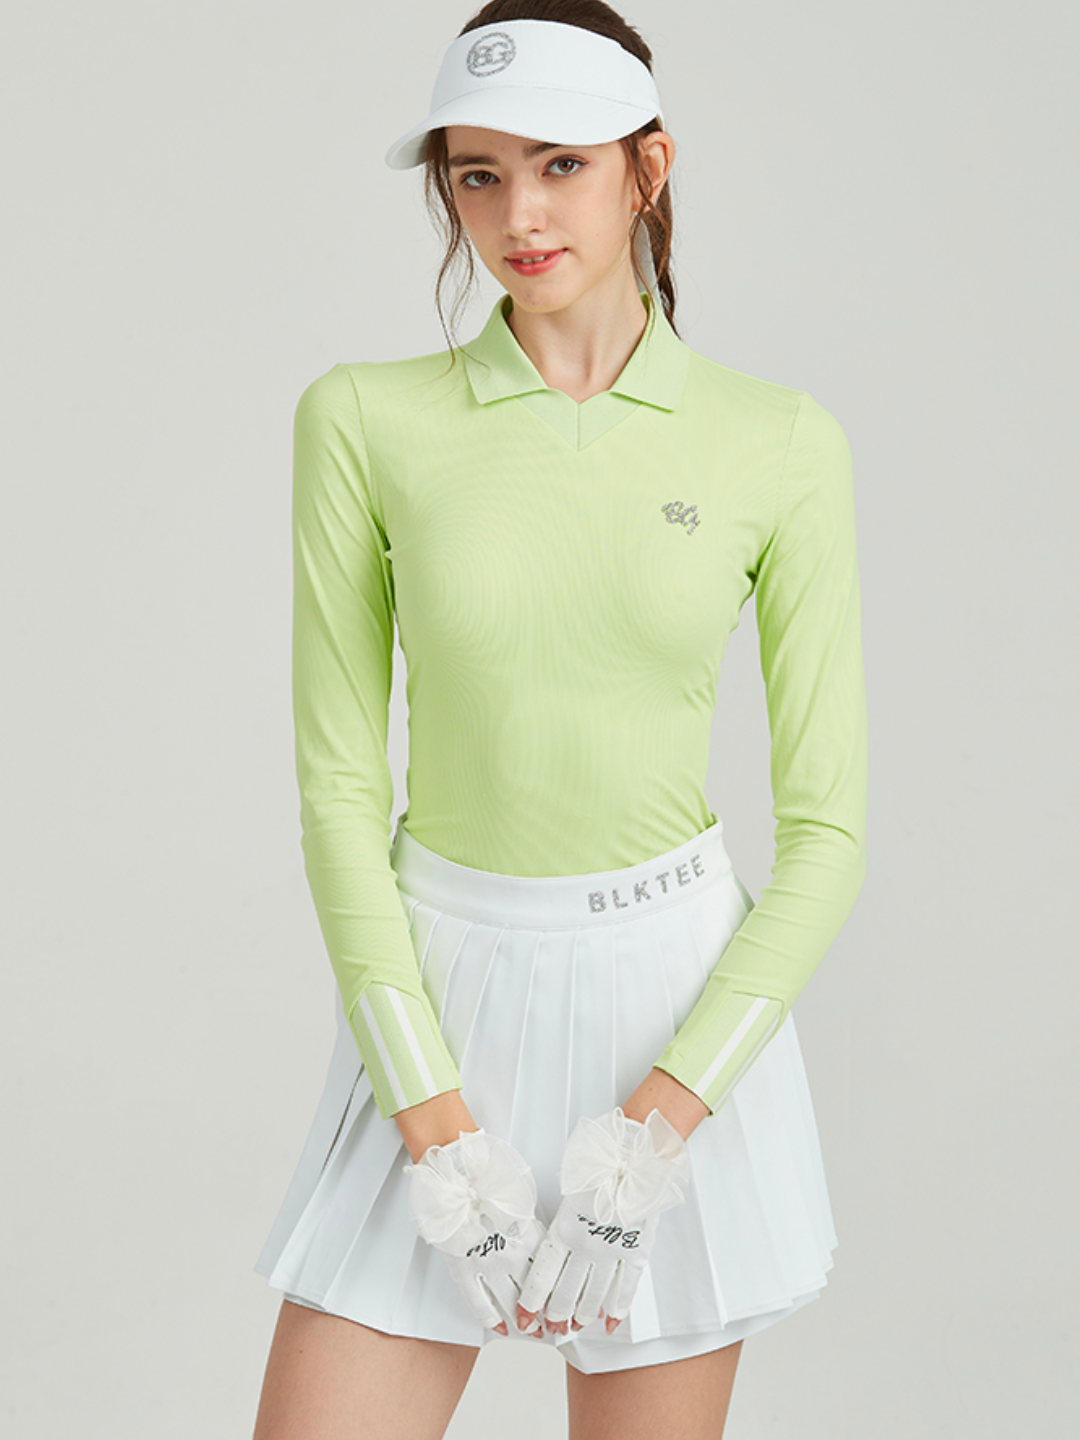 Vêtements de golf moulants haut de gamme ch011